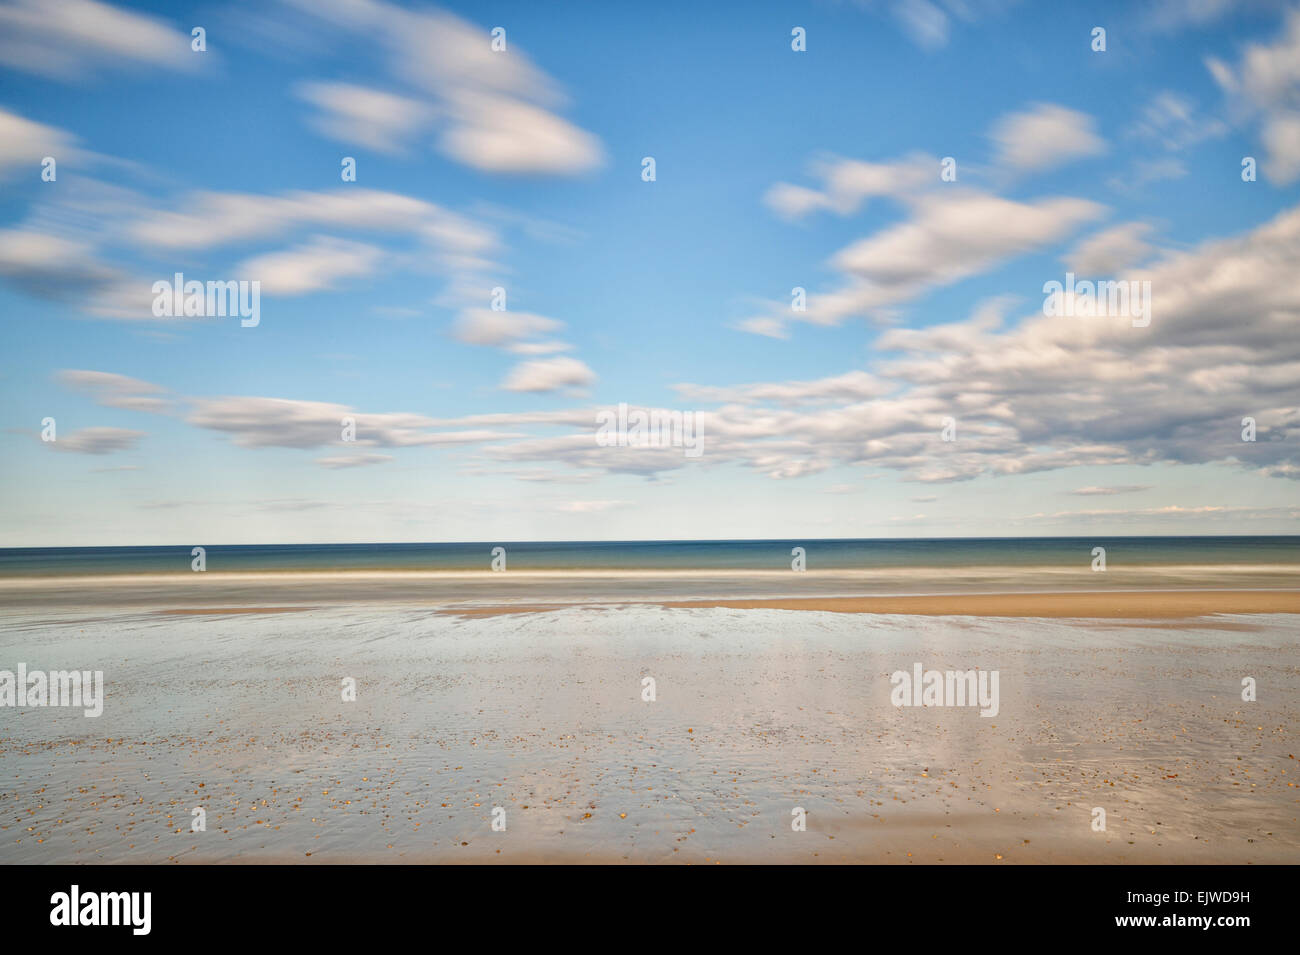 USA, Massachusetts, Duxbury, Sandy beach in water, horizon over sea Stock Photo